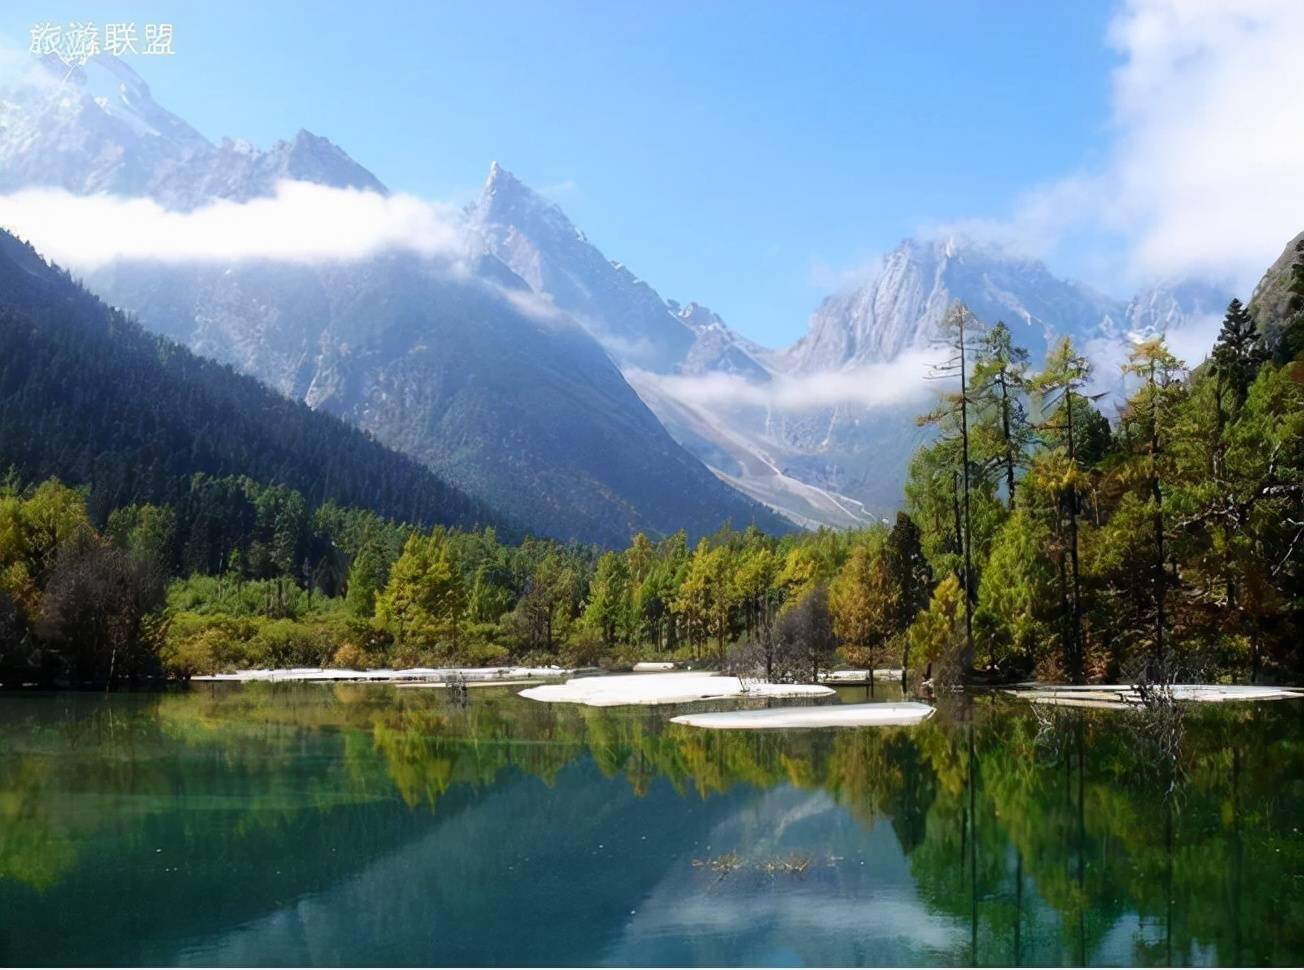 四川四姑娘山,具有秀美的南欧风光,被誉为"中国的阿尔卑斯山"